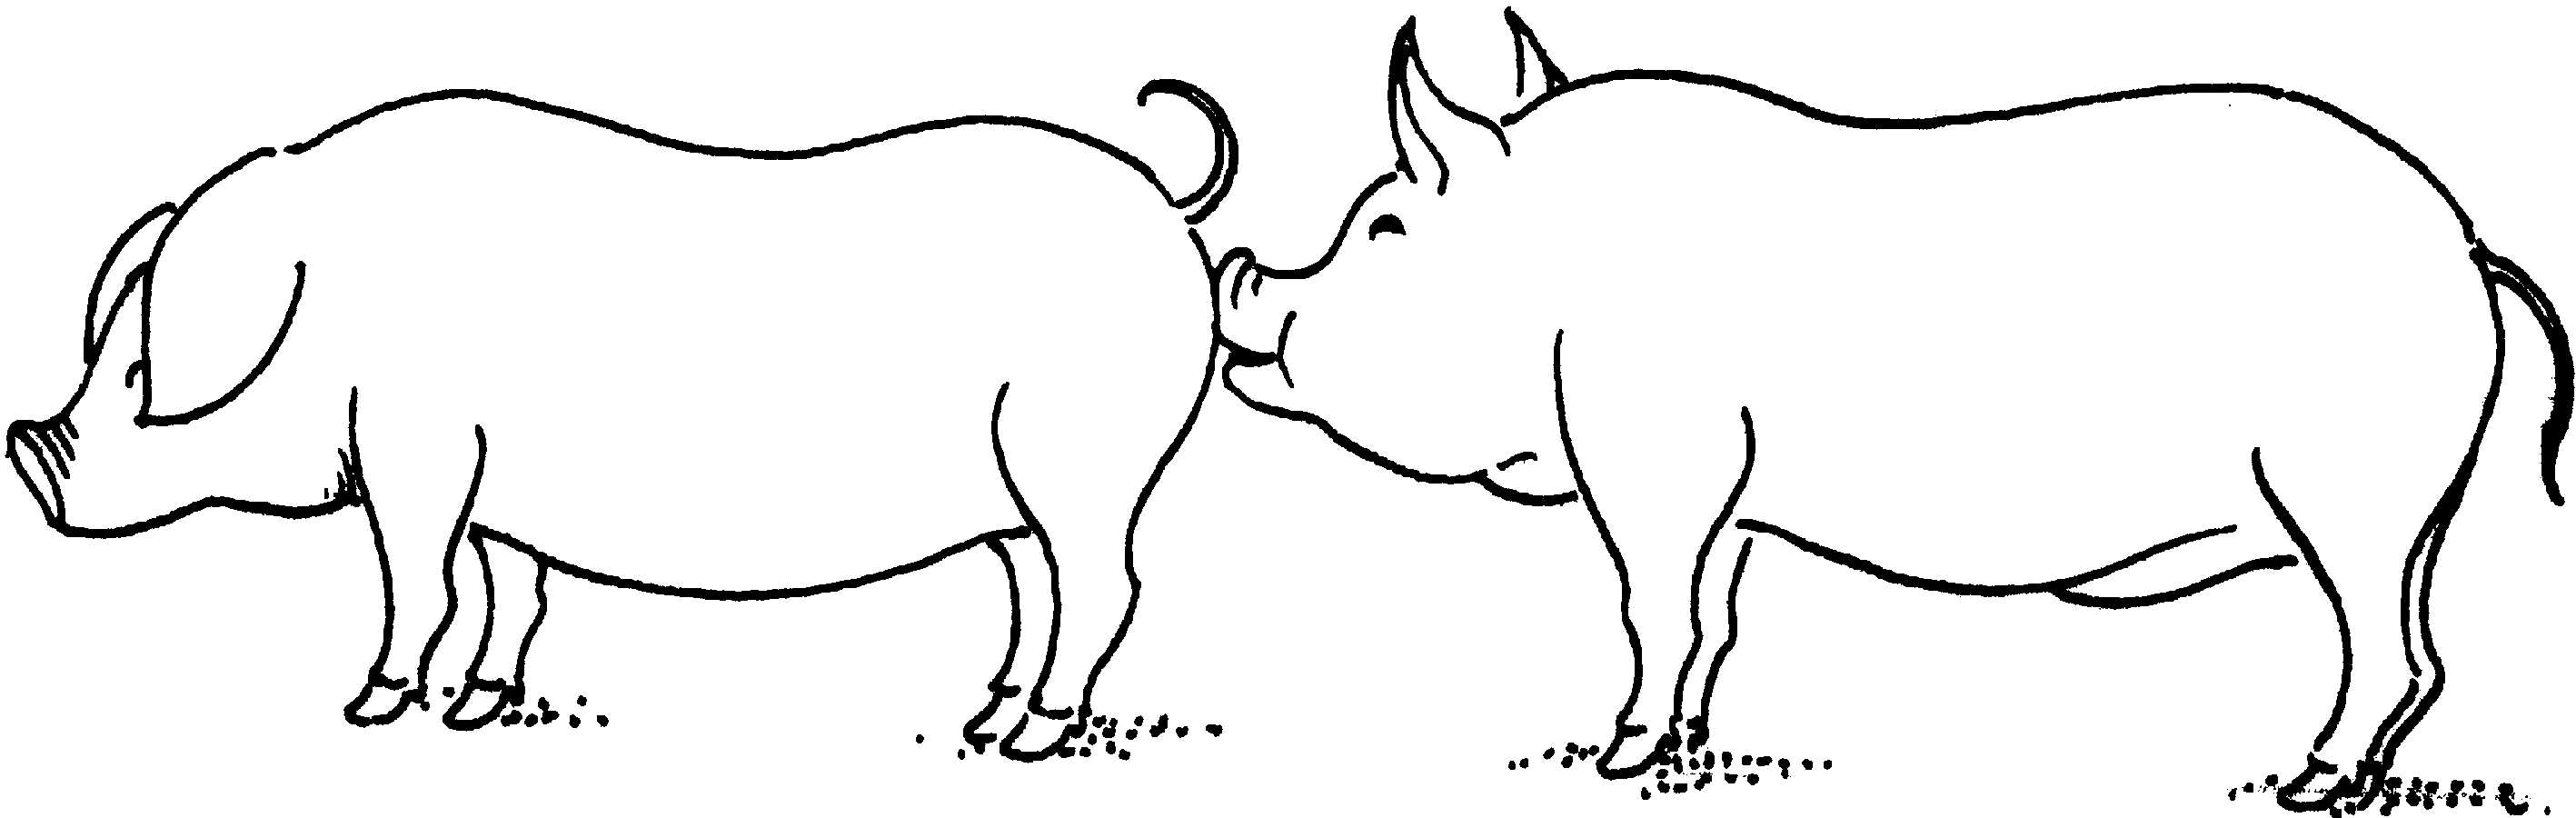 猪的按摩主要表现在仔猪在哺乳前和哺乳后对母猪乳房的按摩,且哺乳后